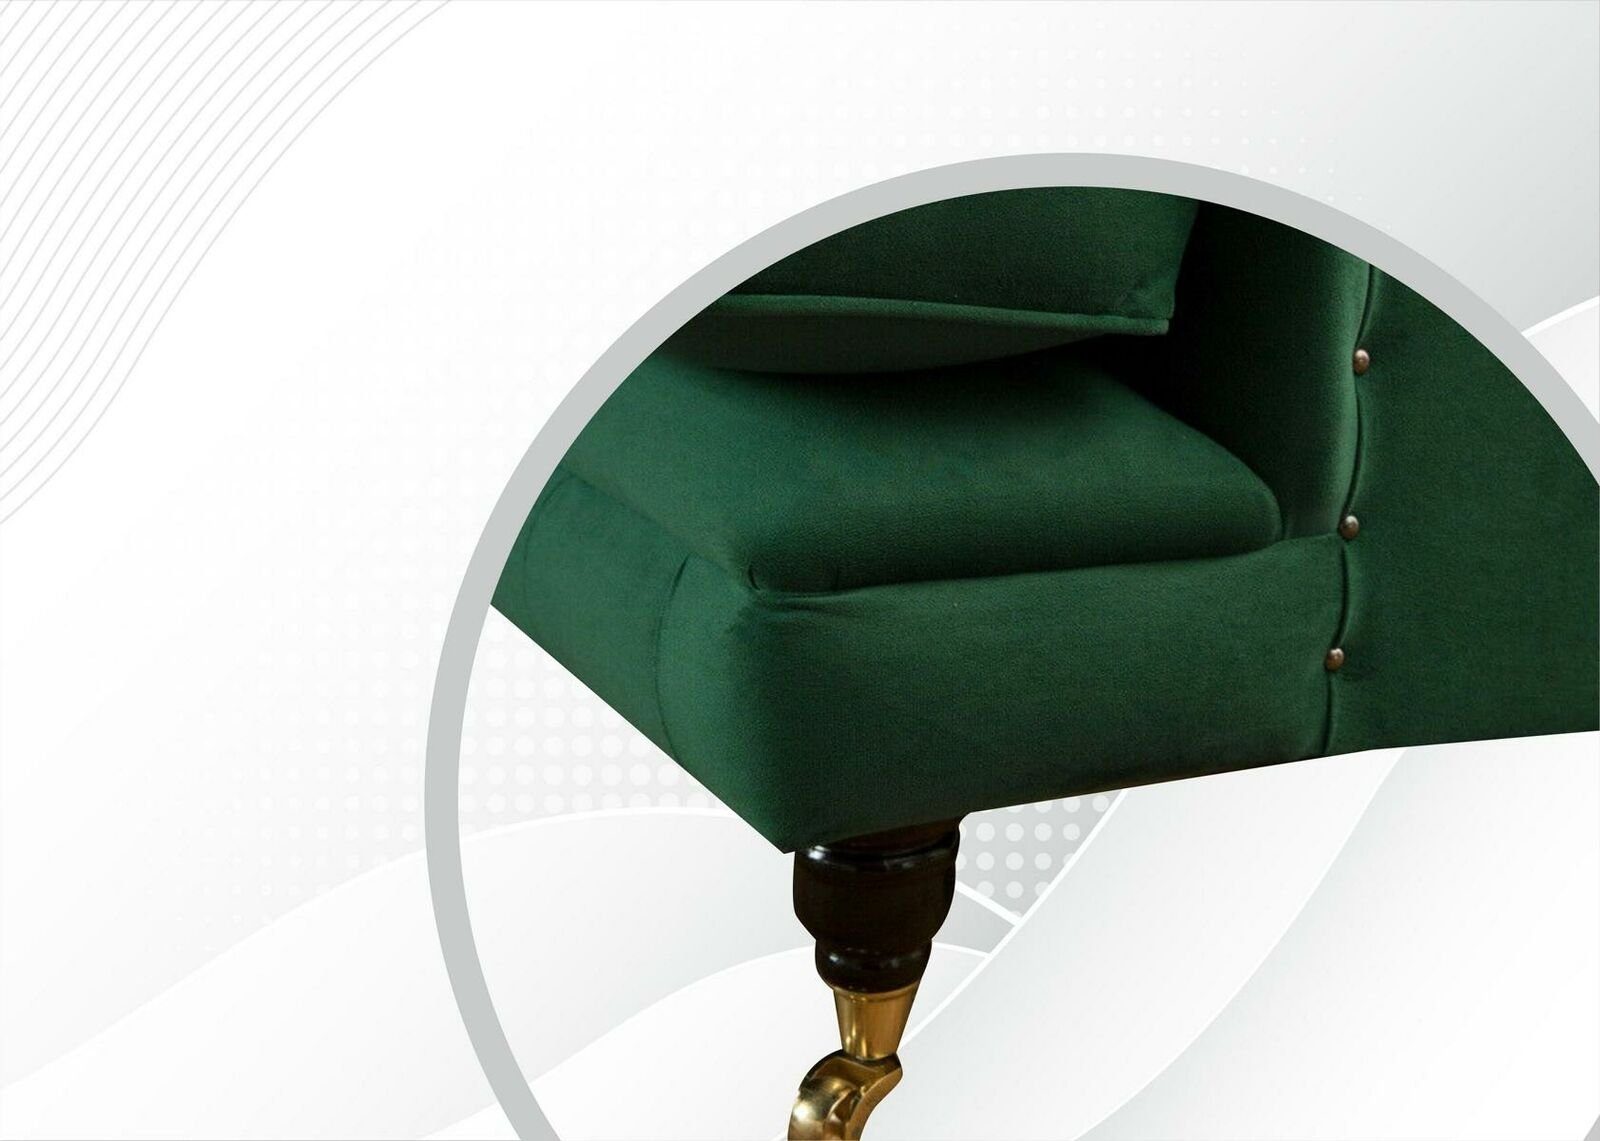 Sofa JVmoebel Sessel, Couch Sitzer Relax Luxus Leder Design Polster Club Sessel